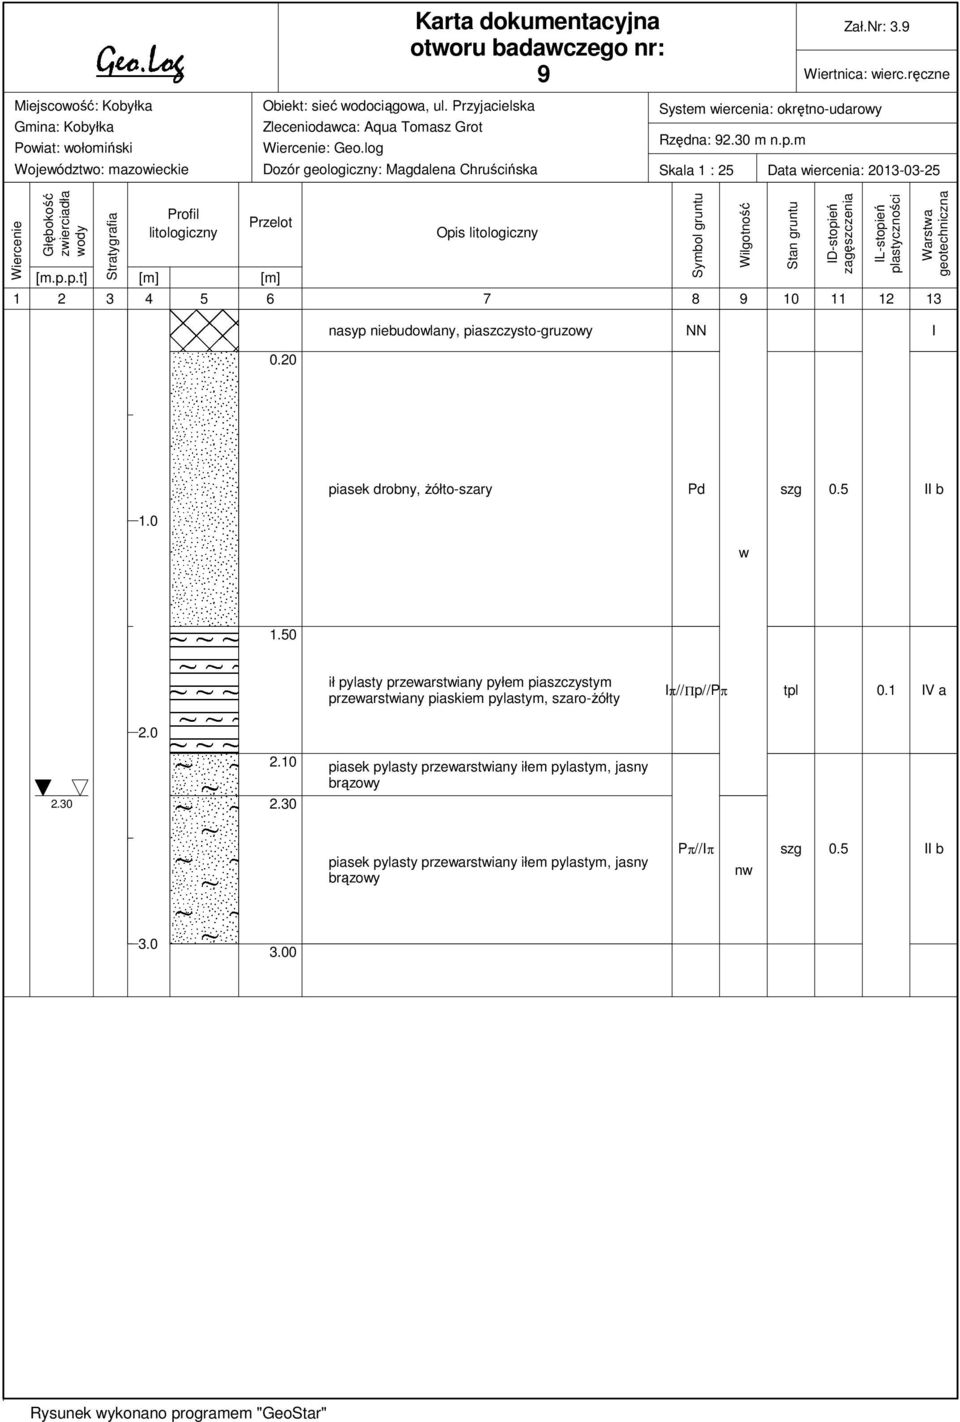 m Skala 1 : 25 Data iercenia: 2013-03-25 Wiercenie Głębokość zierciadła ody Stratygrafia Profil litologiczny Przelot [m.p.